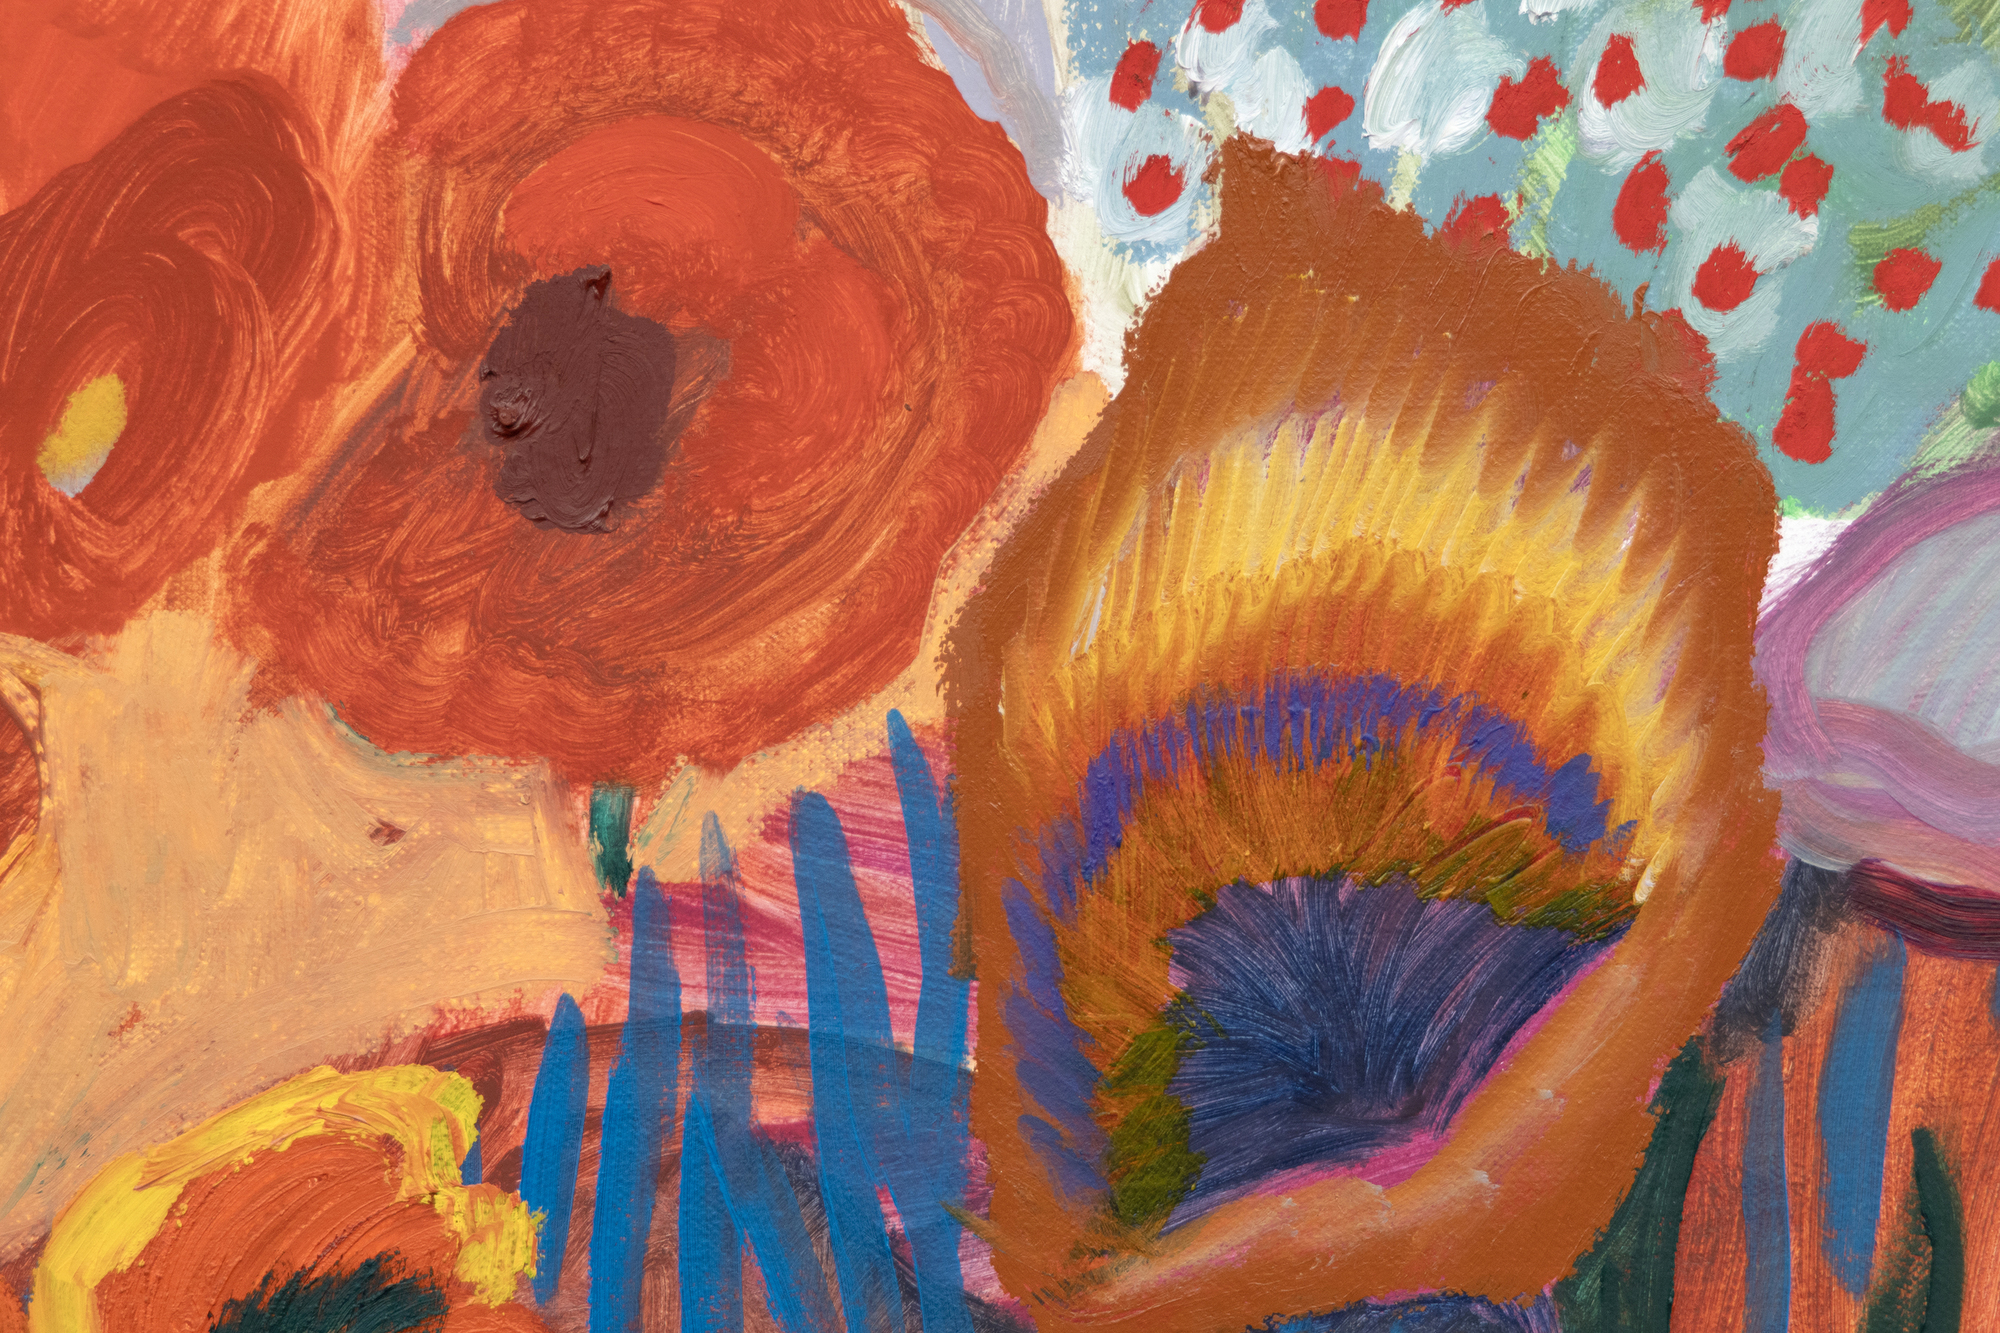 1981年アトランタ生まれ、ブルックリンを拠点に活動するシャラ・ヒューズは、歴史的な影響と現代的な感覚を融合させた風景画への独特なアプローチで知られている。彼女の陽気な色彩は、アンリ・マティスのような巨匠を彷彿とさせ、デヴィッド・ホックニーのスタイリッシュで大胆なビジュアルで伝える一方、アール・ヌーヴォー、フォーヴィスム、ドイツ表現主義からの影響を含む風景画の幅広い伝統を認めている。All the Pretty Faces』は、歴史的な芸術運動と現在のデジタルイメージの現代的な統合であり、過去と現在の架け橋となる魅惑的な創作の世界を観客に提示する。それはまた、幻想的な要素に満ちた彼女の革新的な風景画について、ヒューズの最も印象的な言葉の一つを物語っている：「私はしばしば、花や木々を人物のように考えてきました。時には、絵の中の波や太陽に人格が宿ることもあるので、作品の仕上がりによって様々です。&quot;